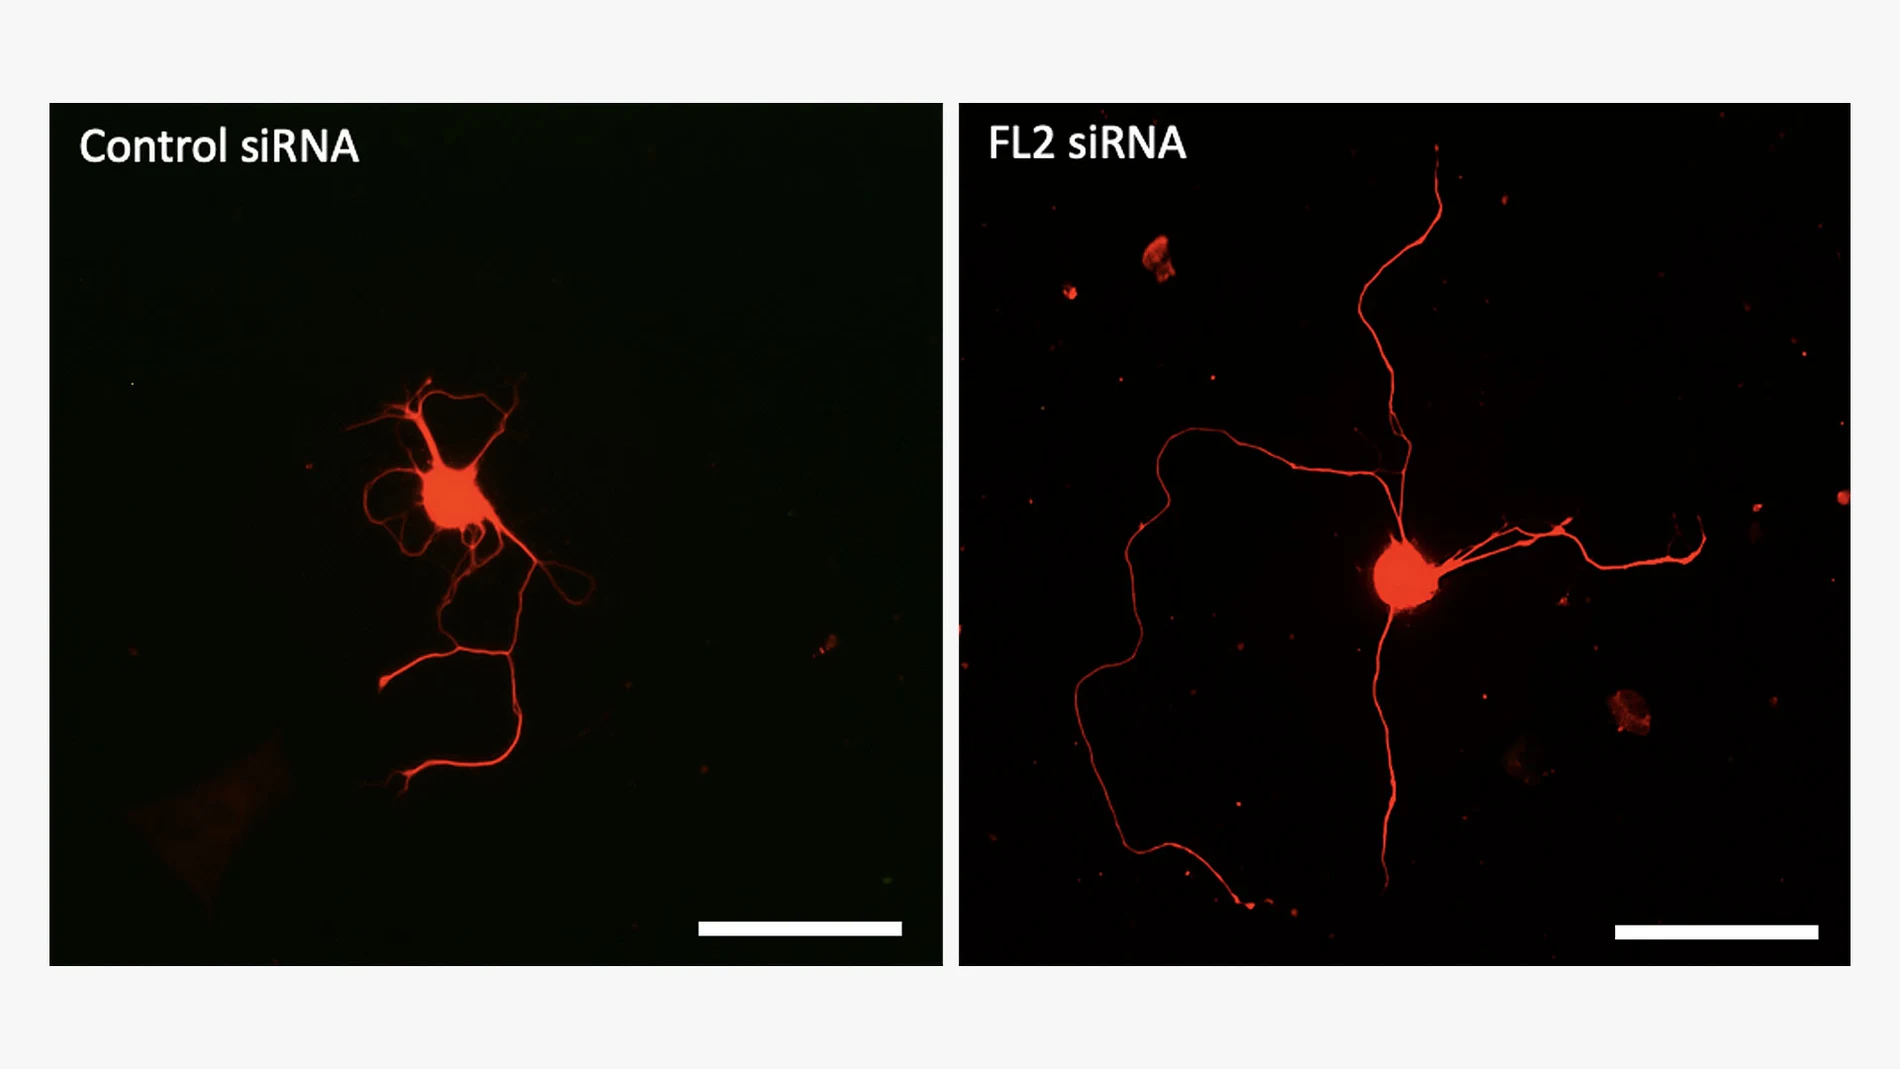 Estas imágenes muestran neuronas cultivadas en placas de Petri y tratadas con ARNip de control (inactivo) (izquierda) o con el propio ARNip (ARNip FL2) (derecha). Las neuronas tratadas con el fármaco regeneran sus axones (las fibras delgadas que se extienden desde los cuerpos centrales de las neuronas) a un ritmo significativamente más rápido que las neuronas tratadas con control